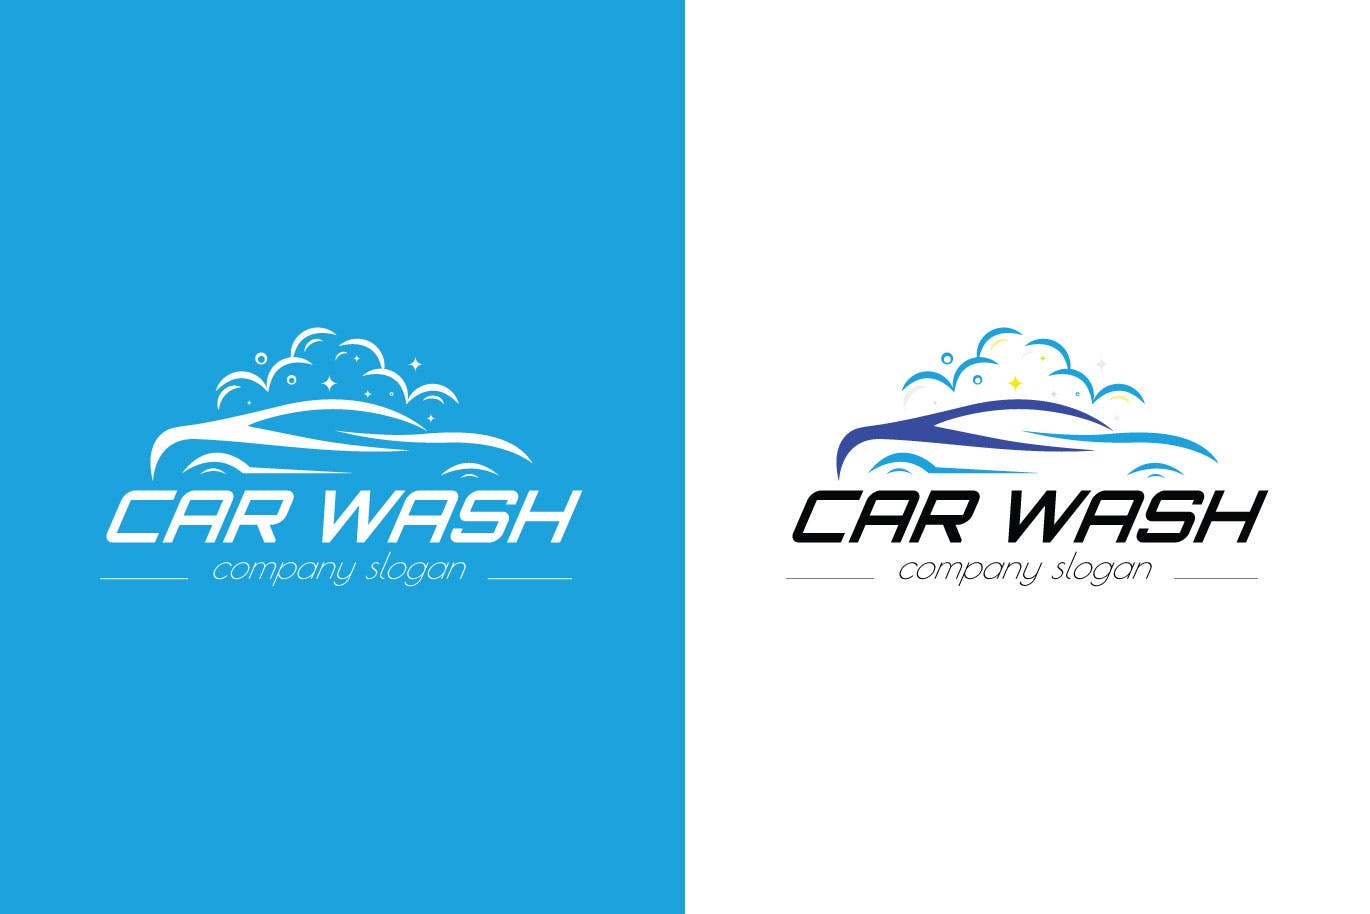 洗车店品牌Logo设计素材库精选模板 Car Wash Business Logo Template插图(1)